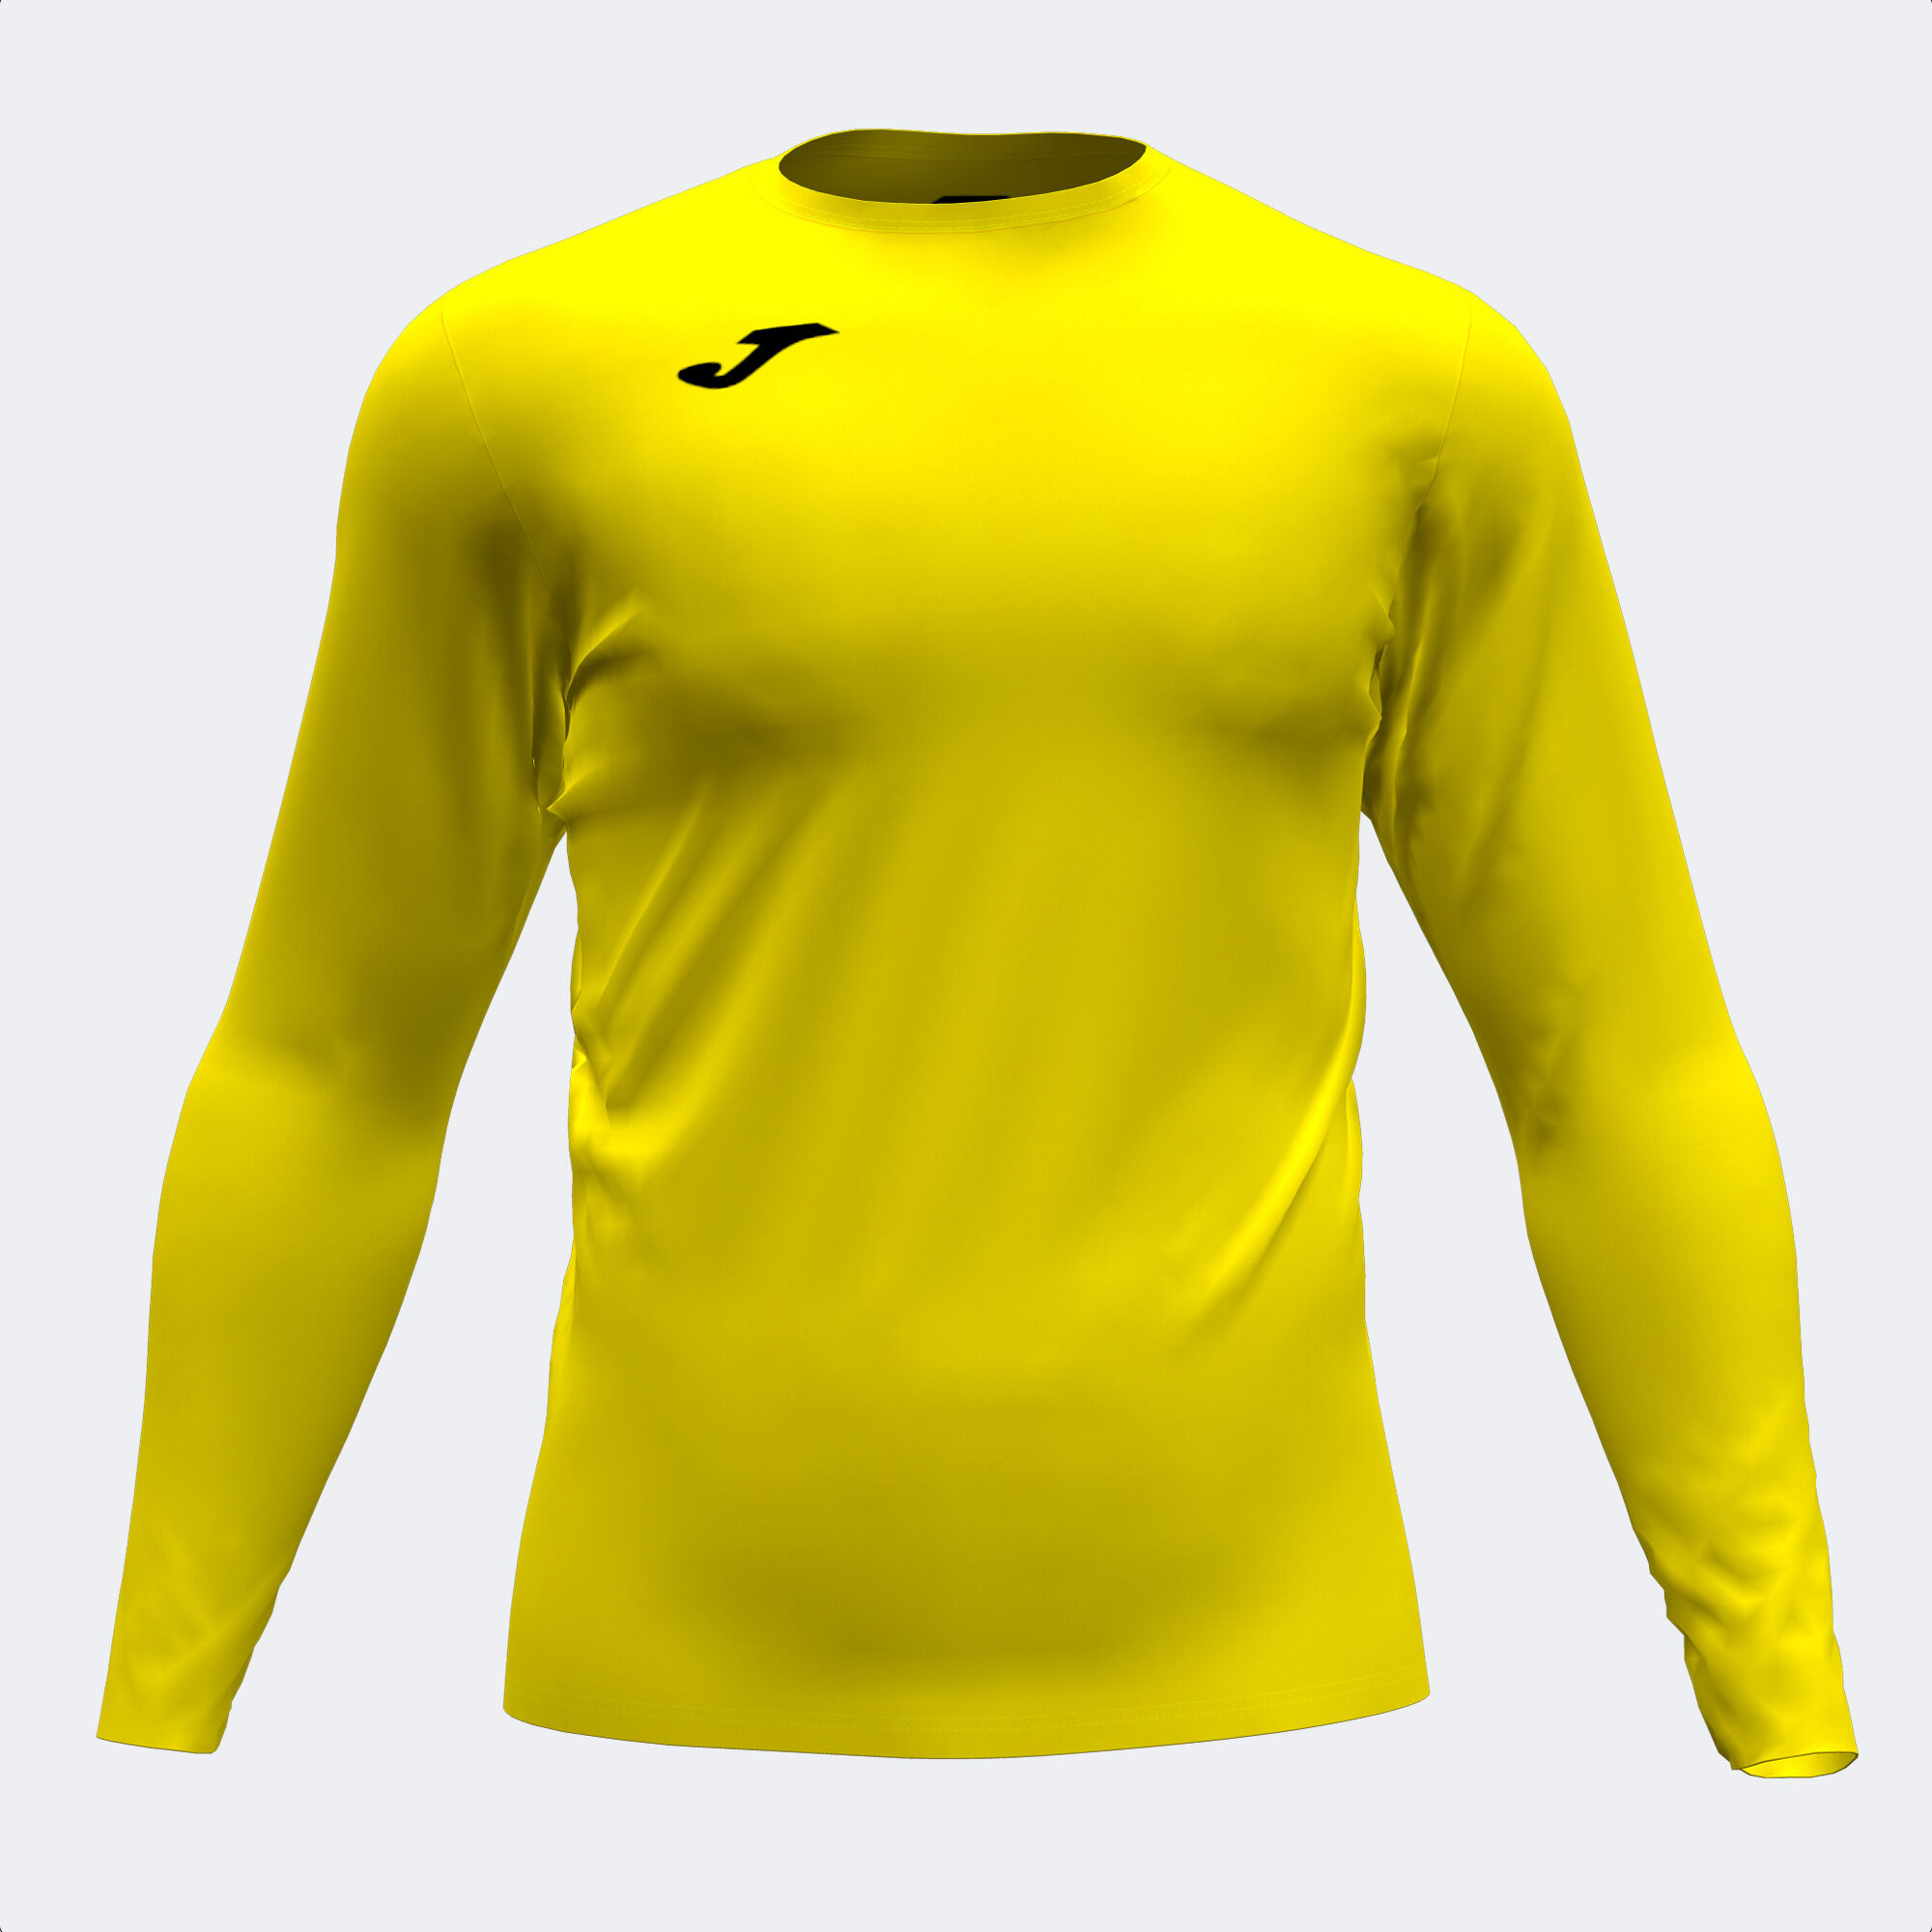 Camiseta manga larga unisex Academy amarillo | JOMA®